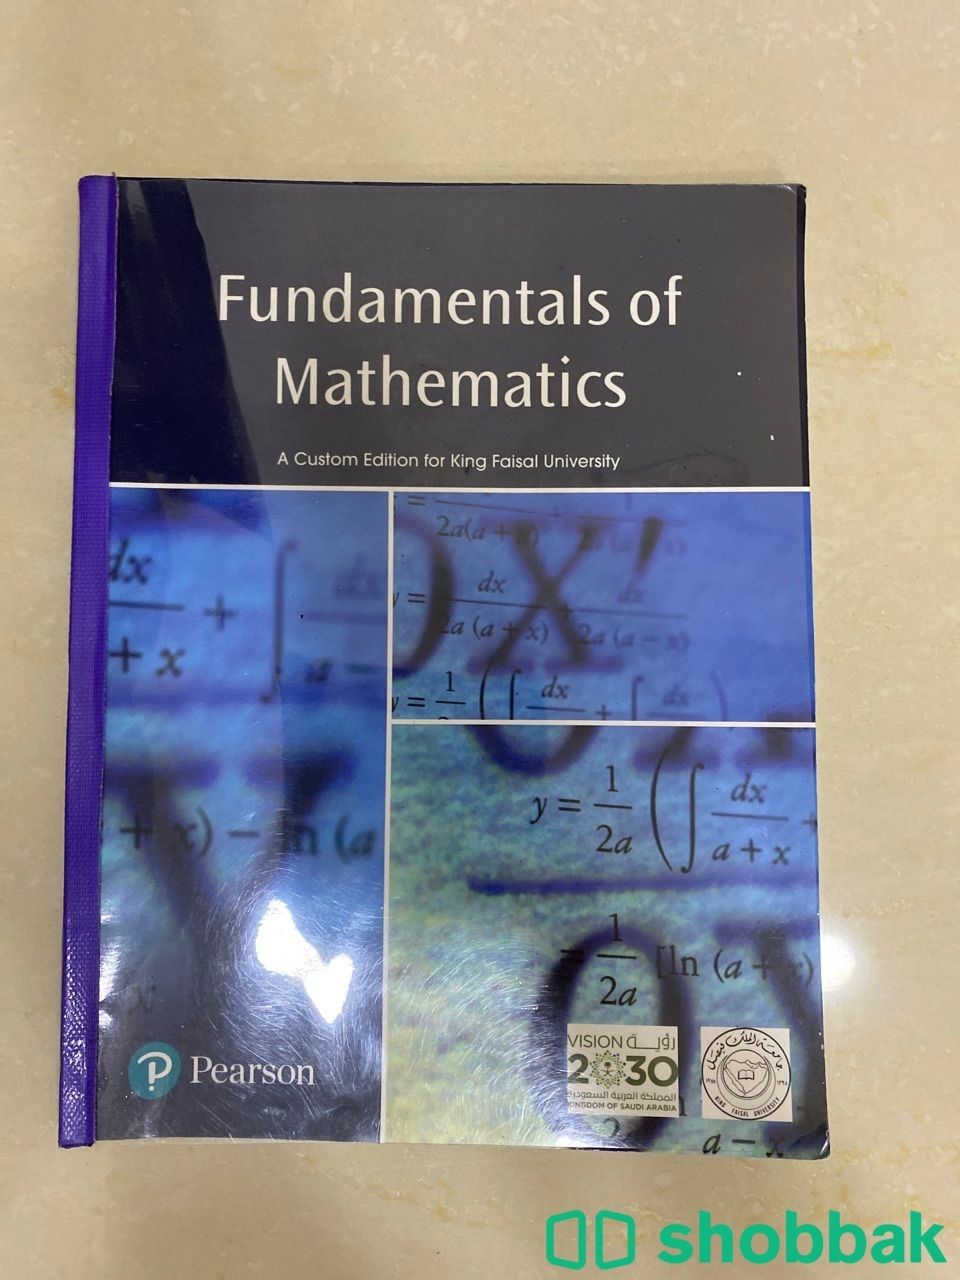 كتاب رياضيات ١ للسنة التحضيرية في جامعة الملك فيصل شباك السعودية